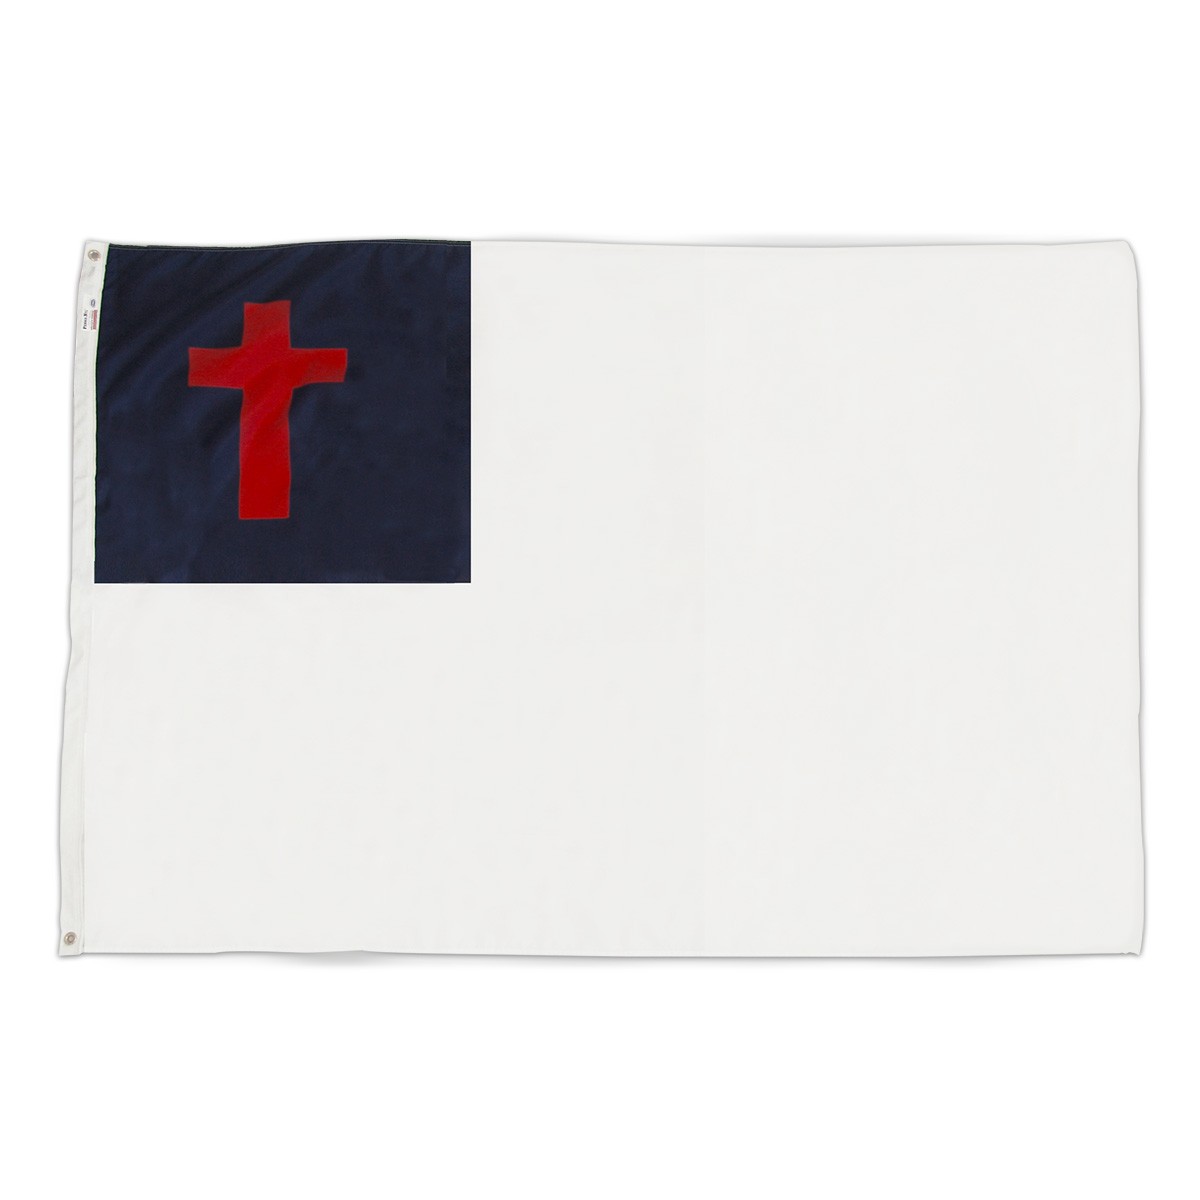 Christian flag 4ft x 6ft nylon